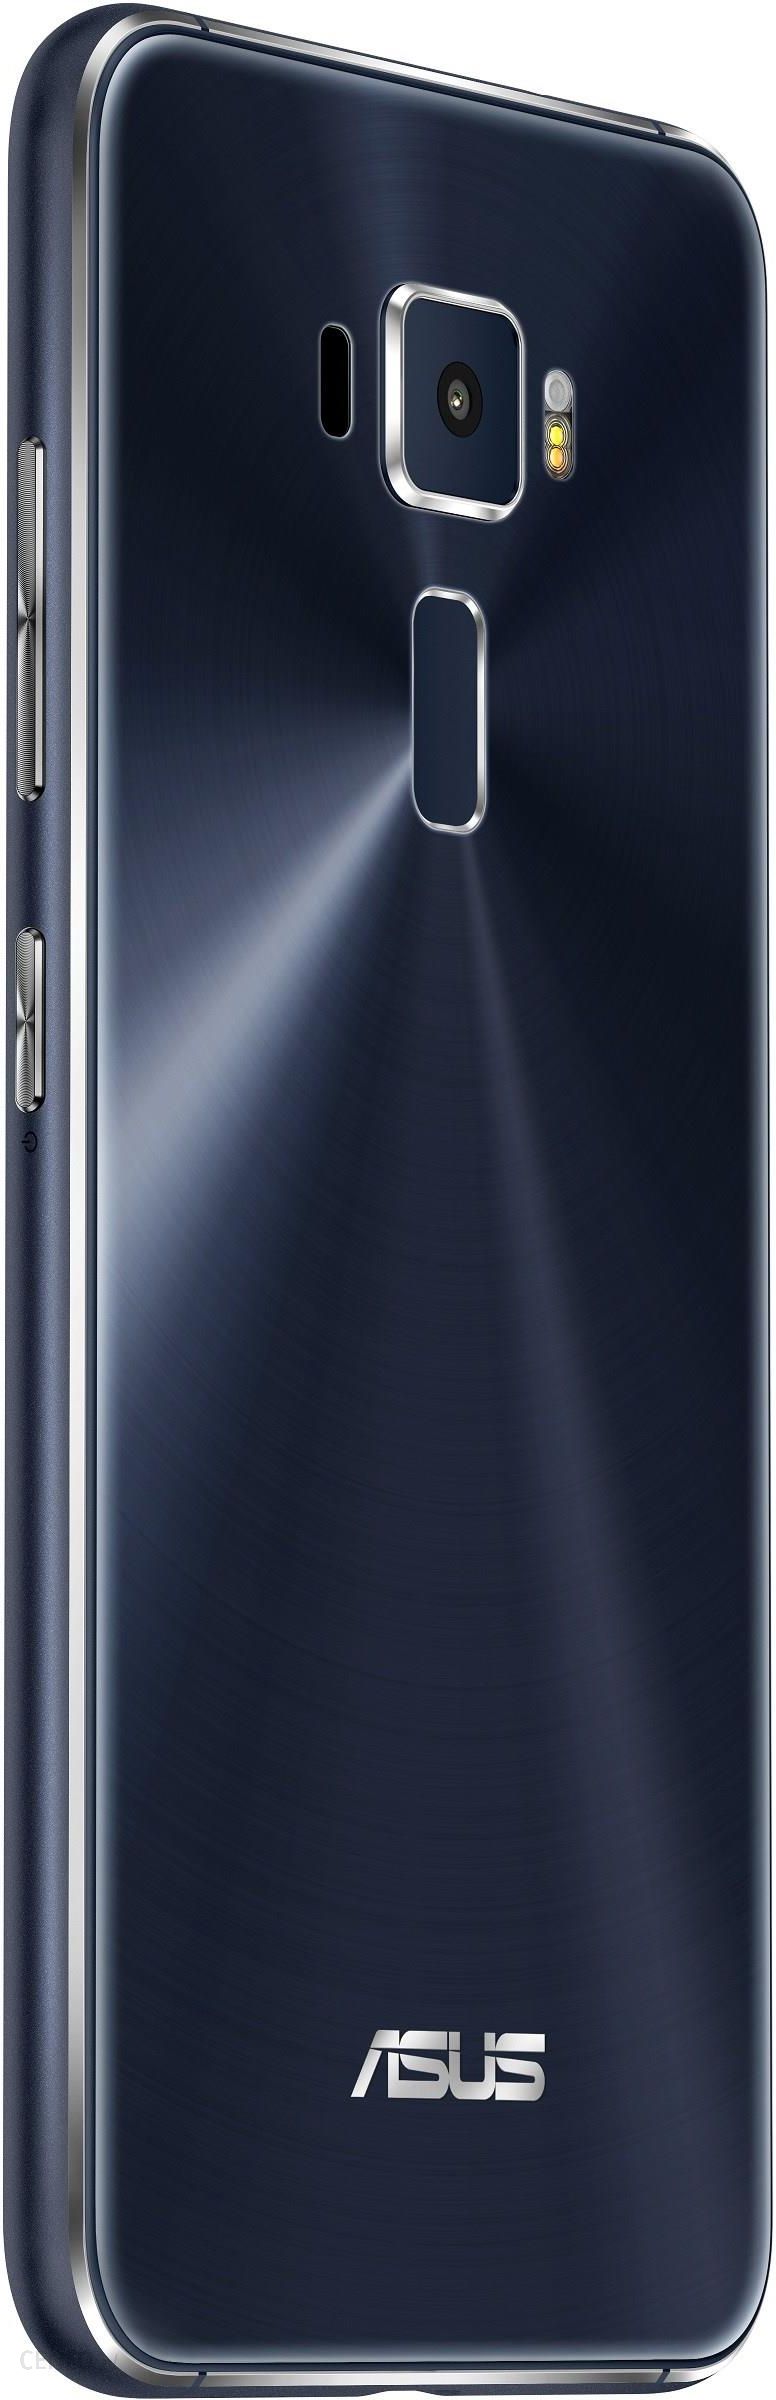 ASUS Zenfone 3 ZE520KL 32GB Granatowy - Cena, opinie na Ceneo.pl